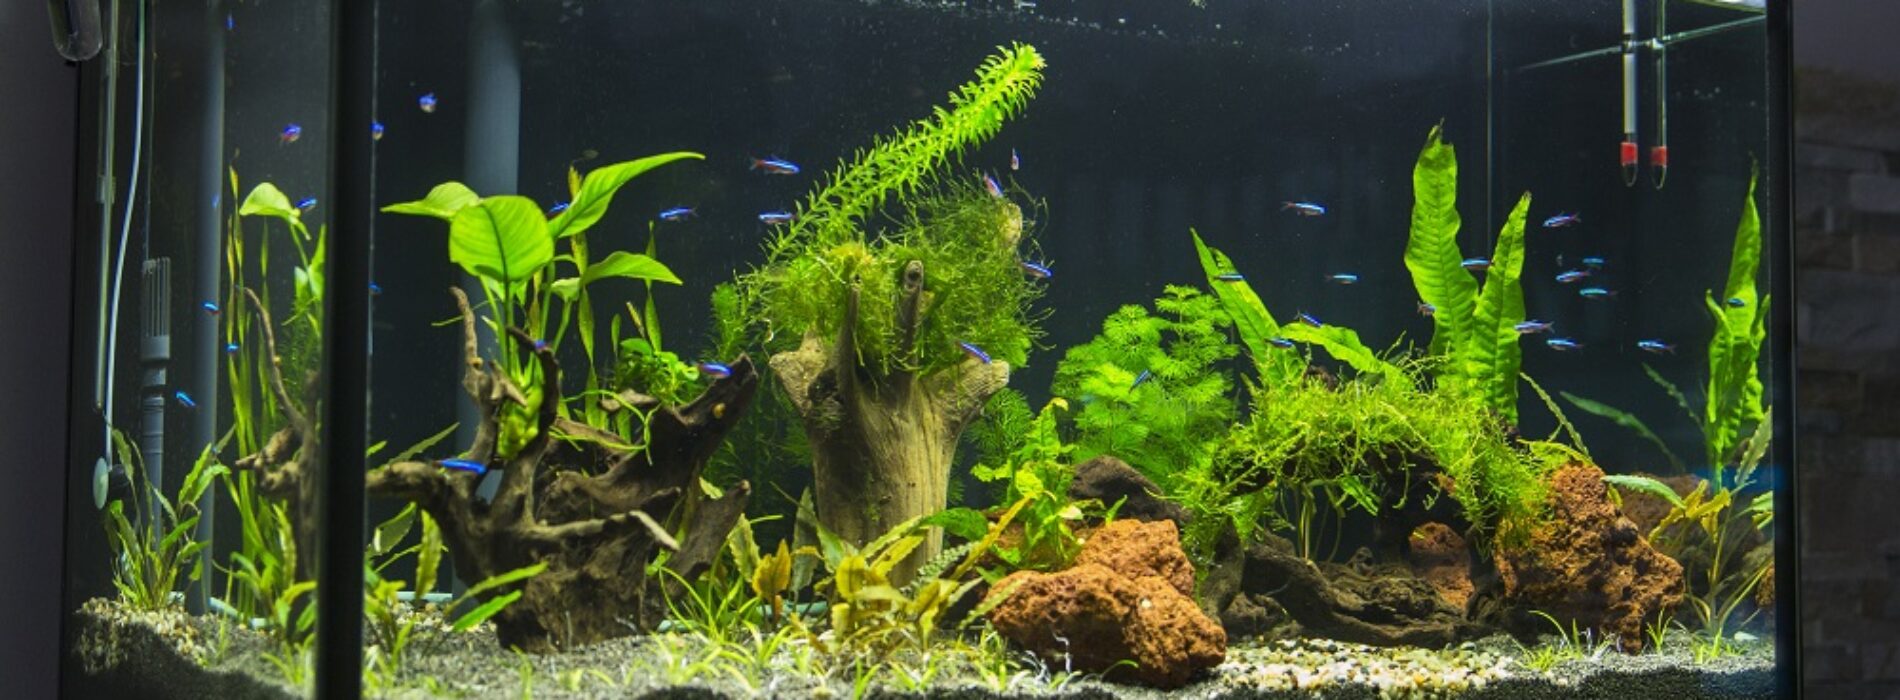 Internetowy akwarystyczny sklep – żywe czy sztuczne rośliny do akwarium? Co wybrać?